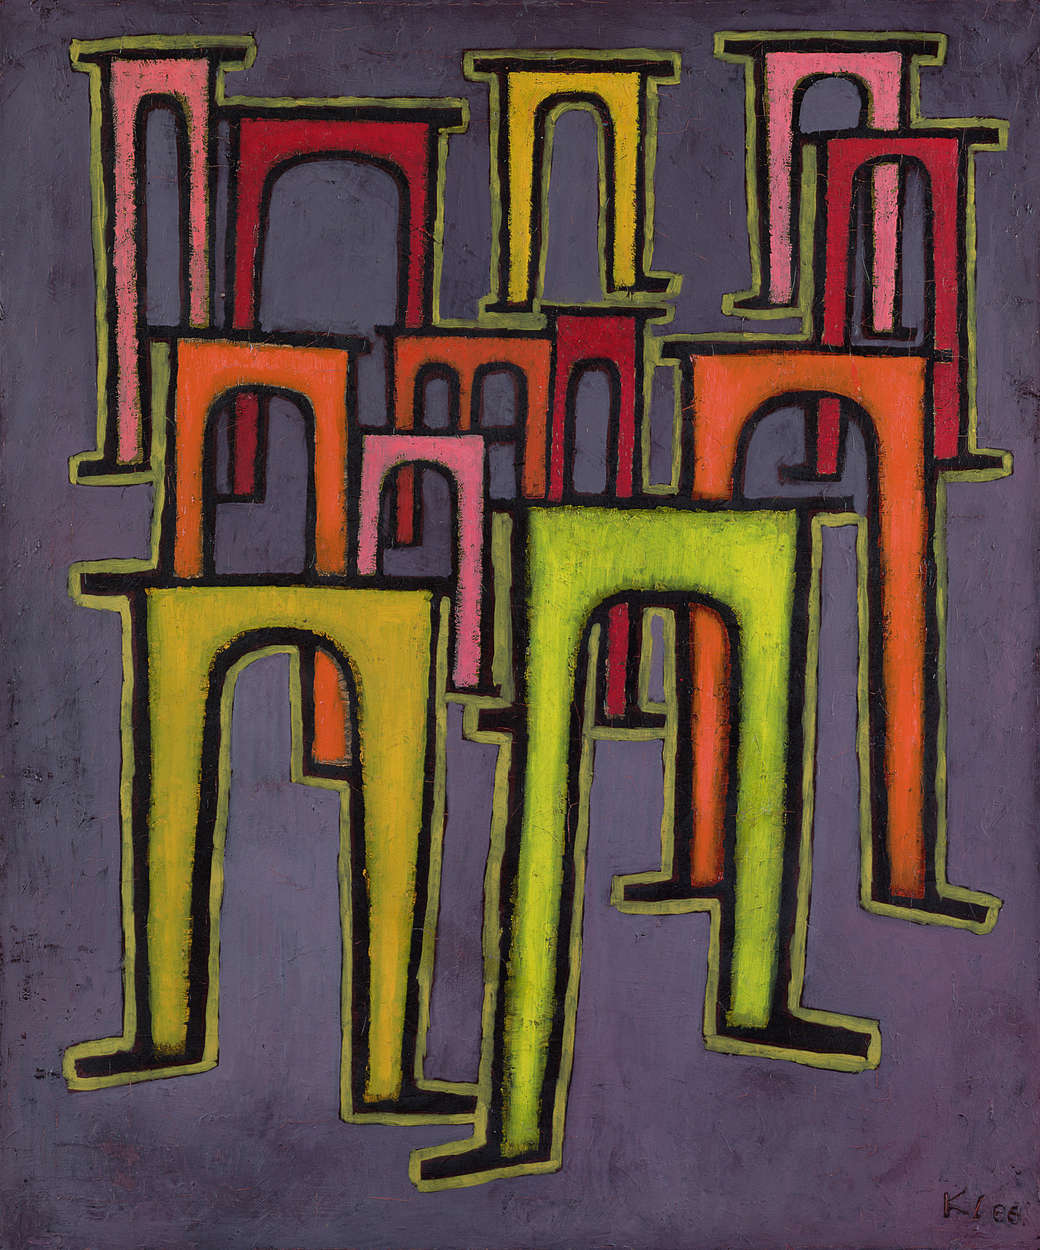             Muurschildering "Revolutie van het Viaduct" door Paul Klee
        